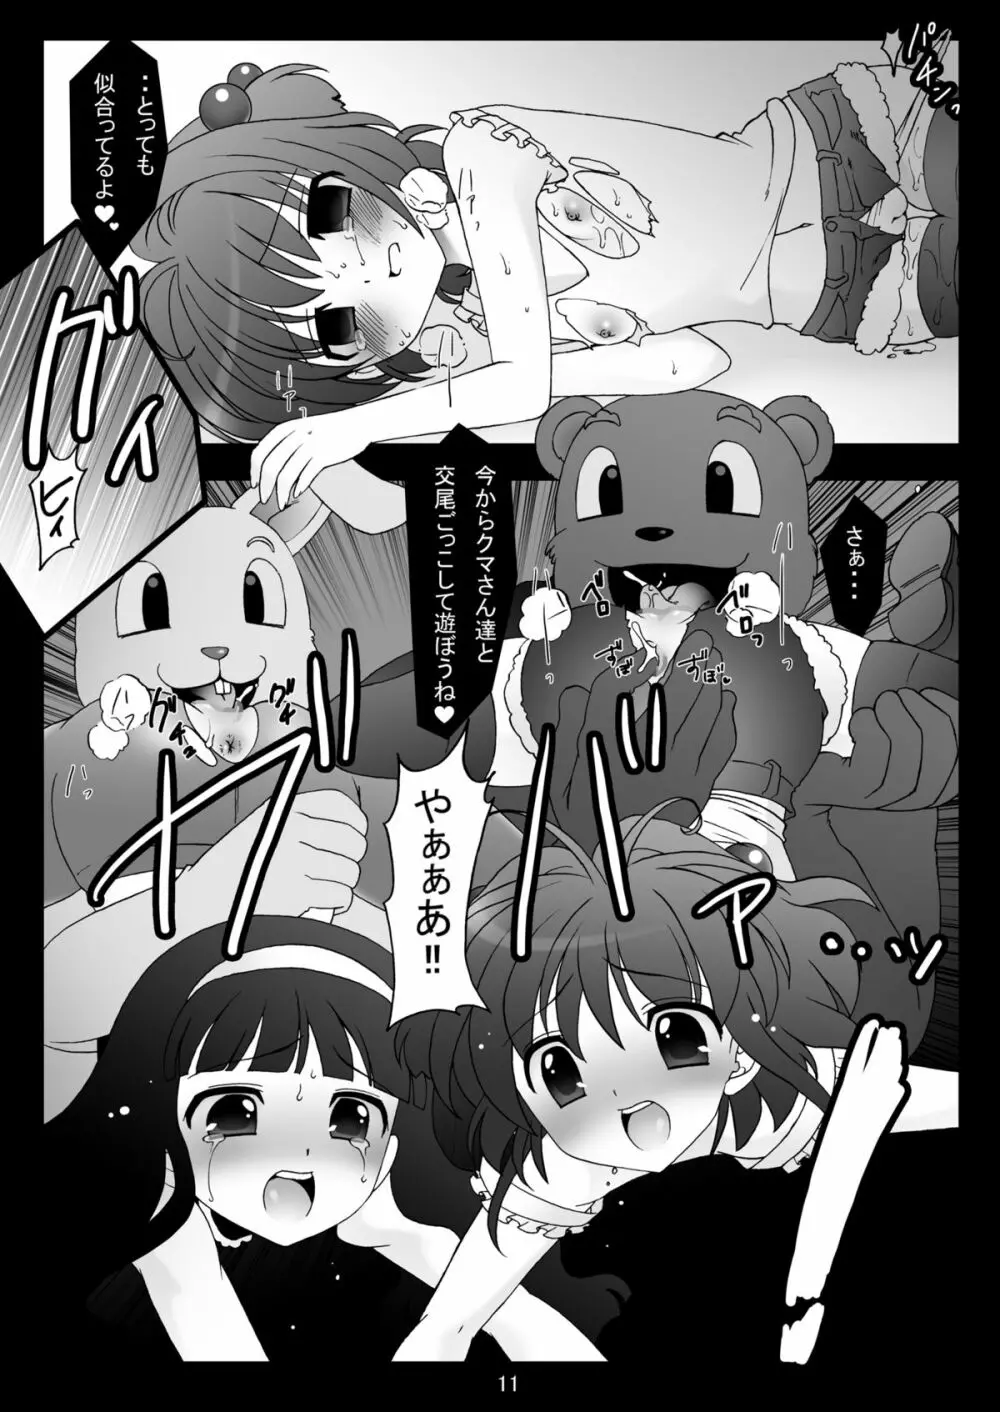 sakura twilight time - page11